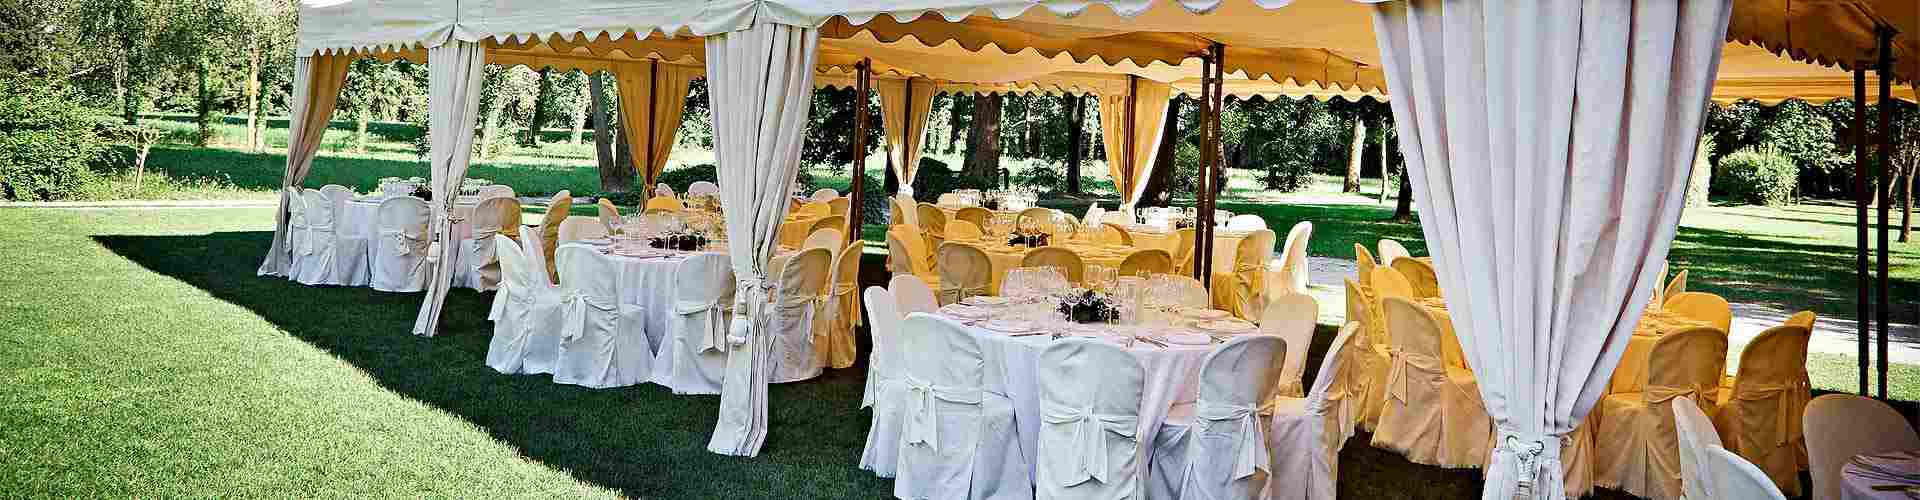 Restaurantes para bodas 2021 en La Canaleja